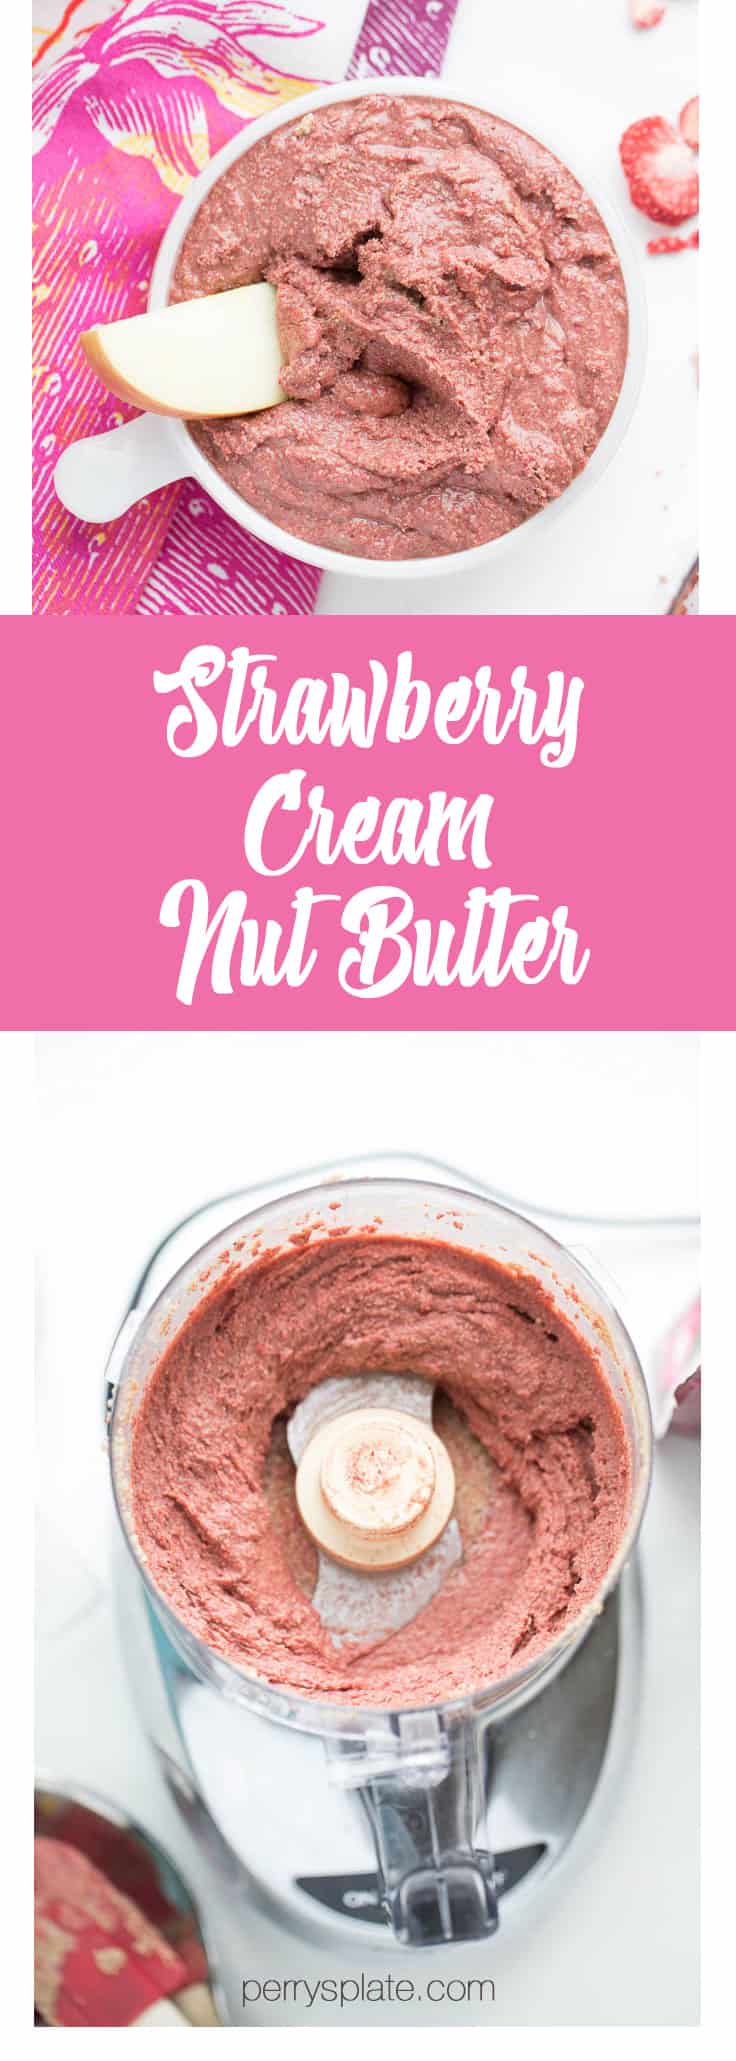 Strawberry Cream Nut Butter | nut butter recipe | paleo recipe | perrysplate.com